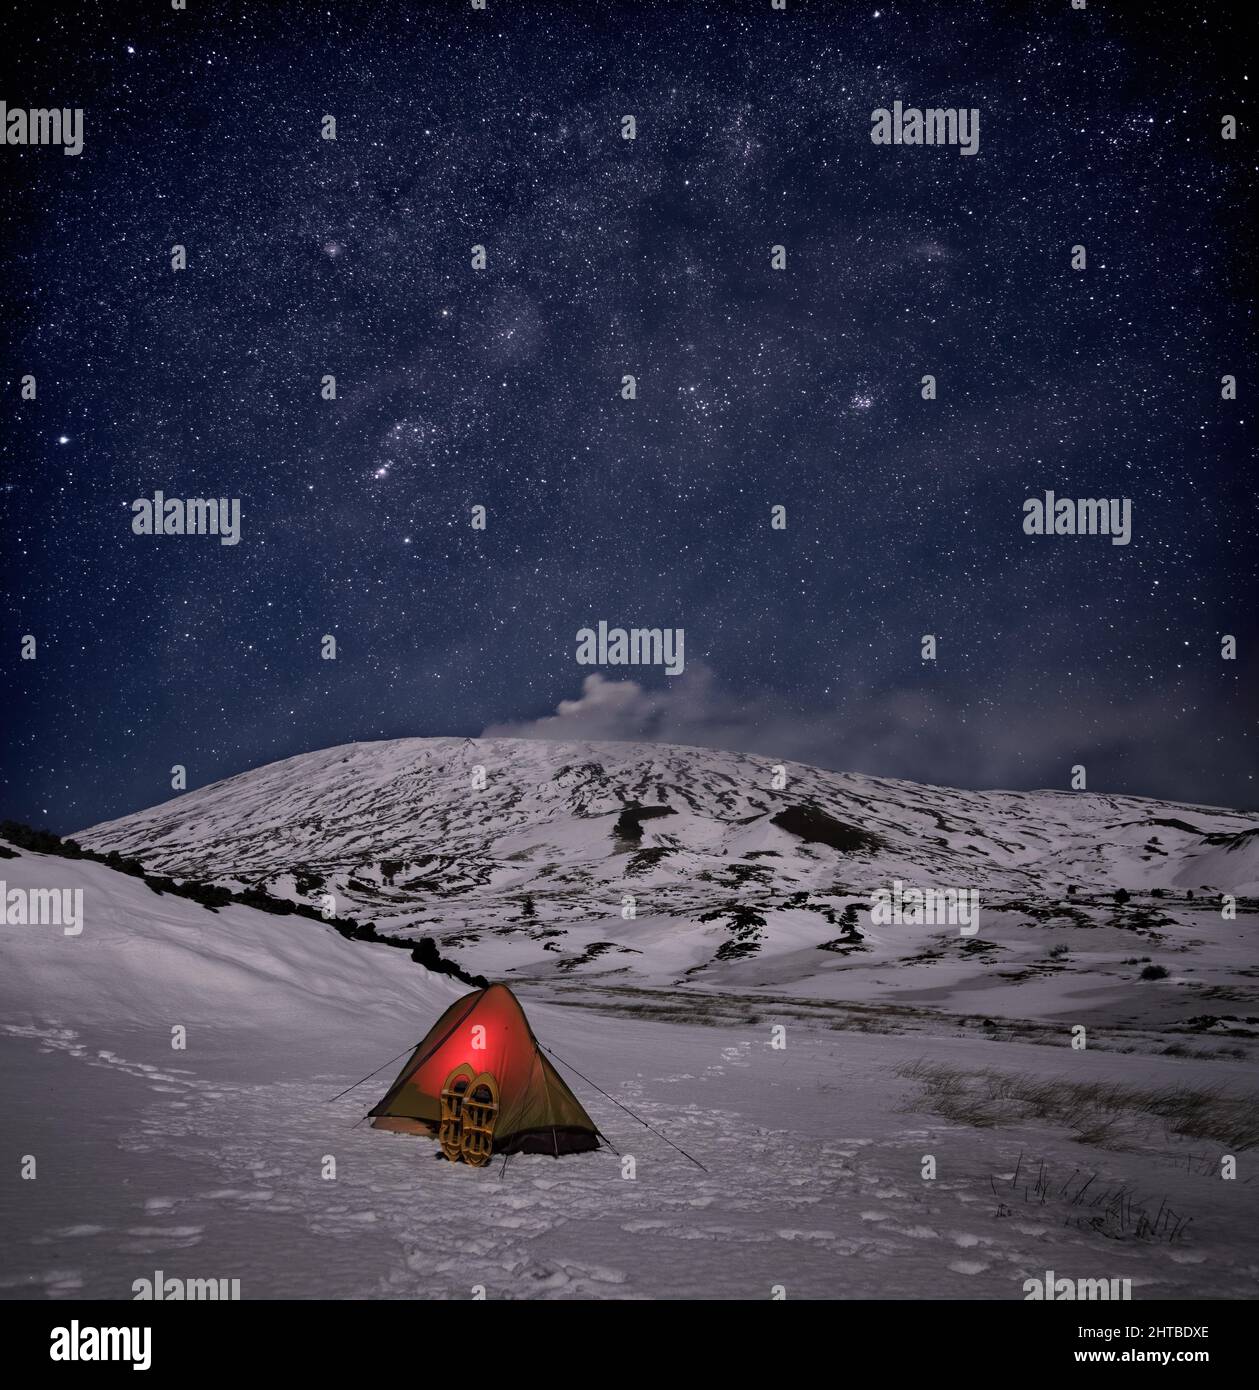 tenda campeggio neve montagna notte paesaggio stellato cielo Foto Stock